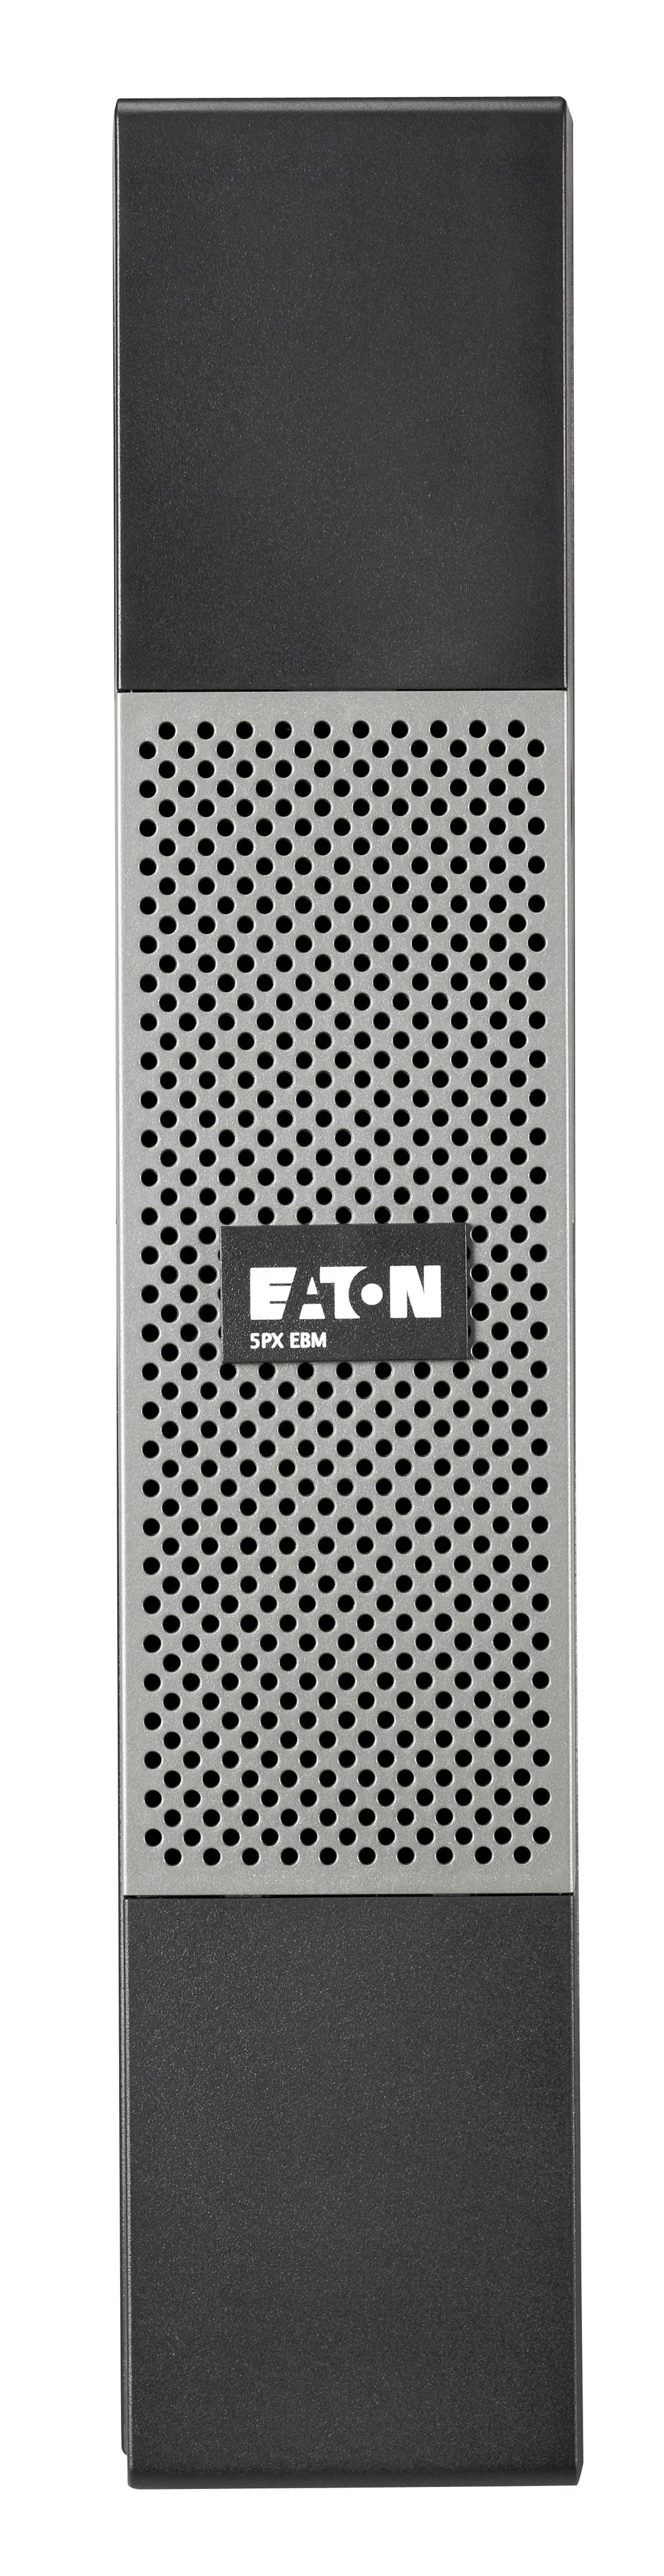 Eaton 5PX EBM 48V RT2U